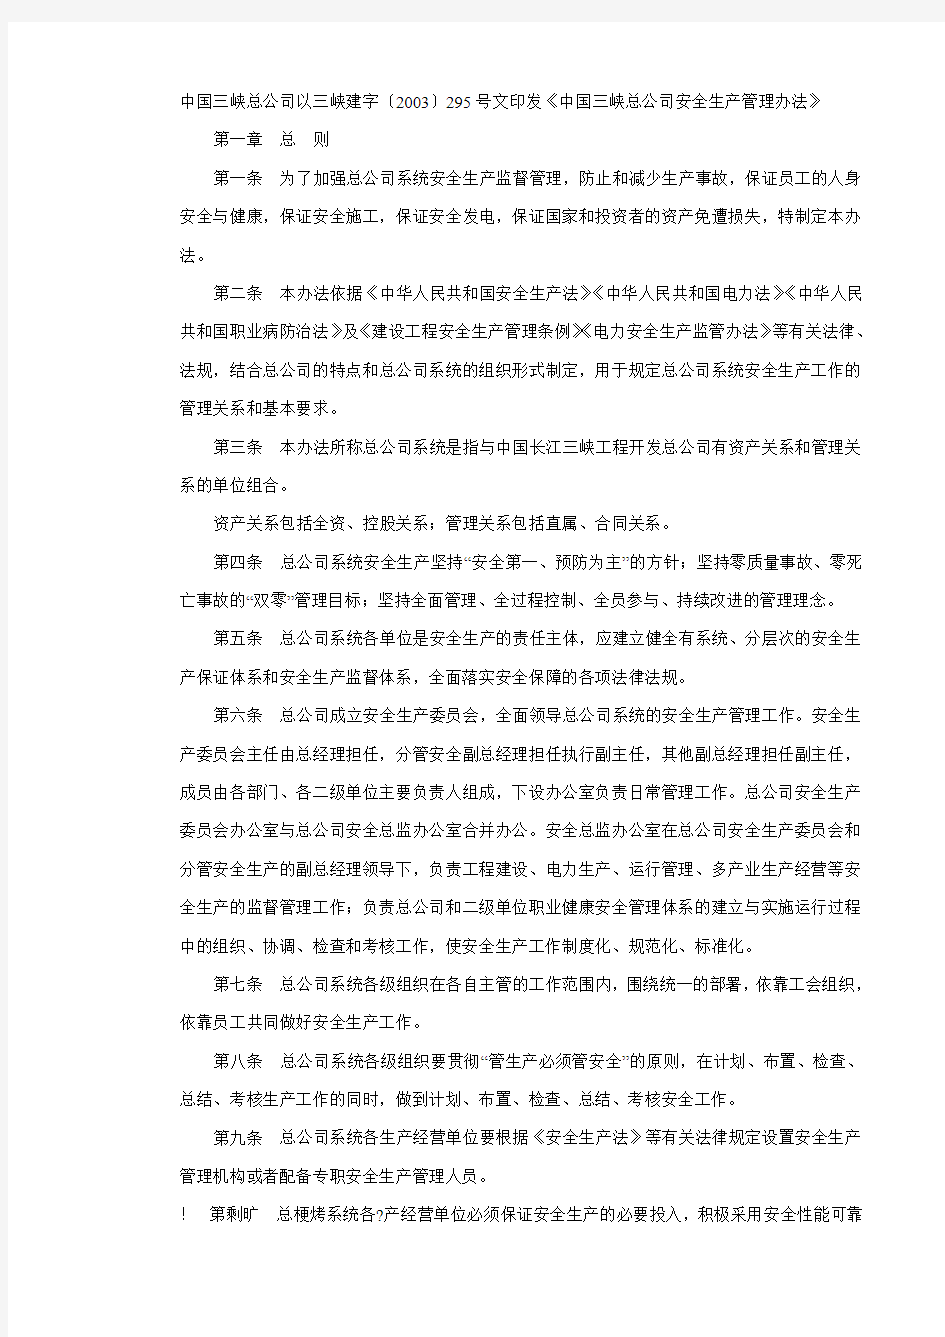 中国三峡总公司安全生产管理办法